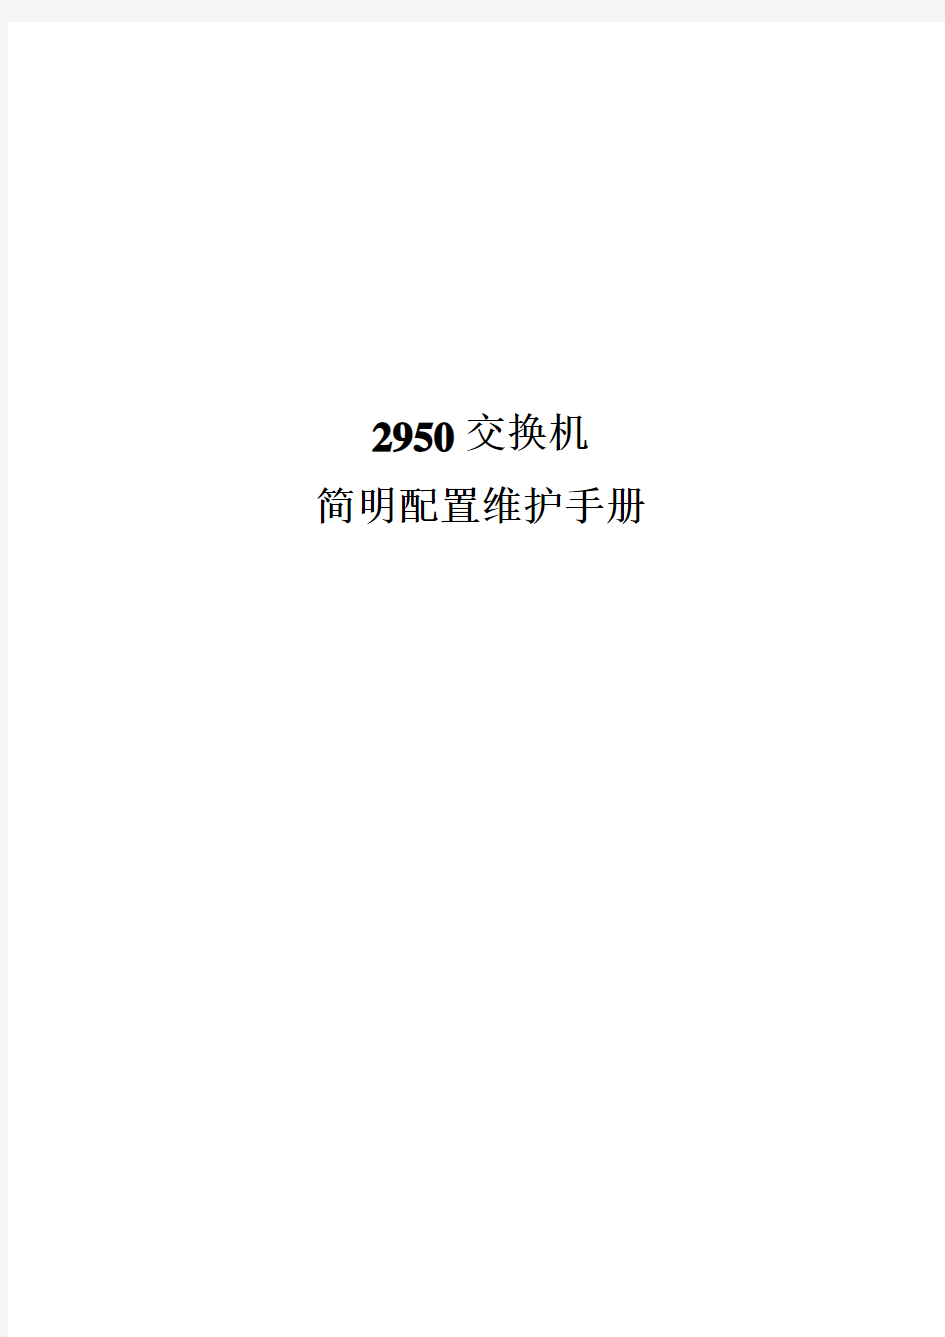 思科cisco2950交换机配置手册(中文)